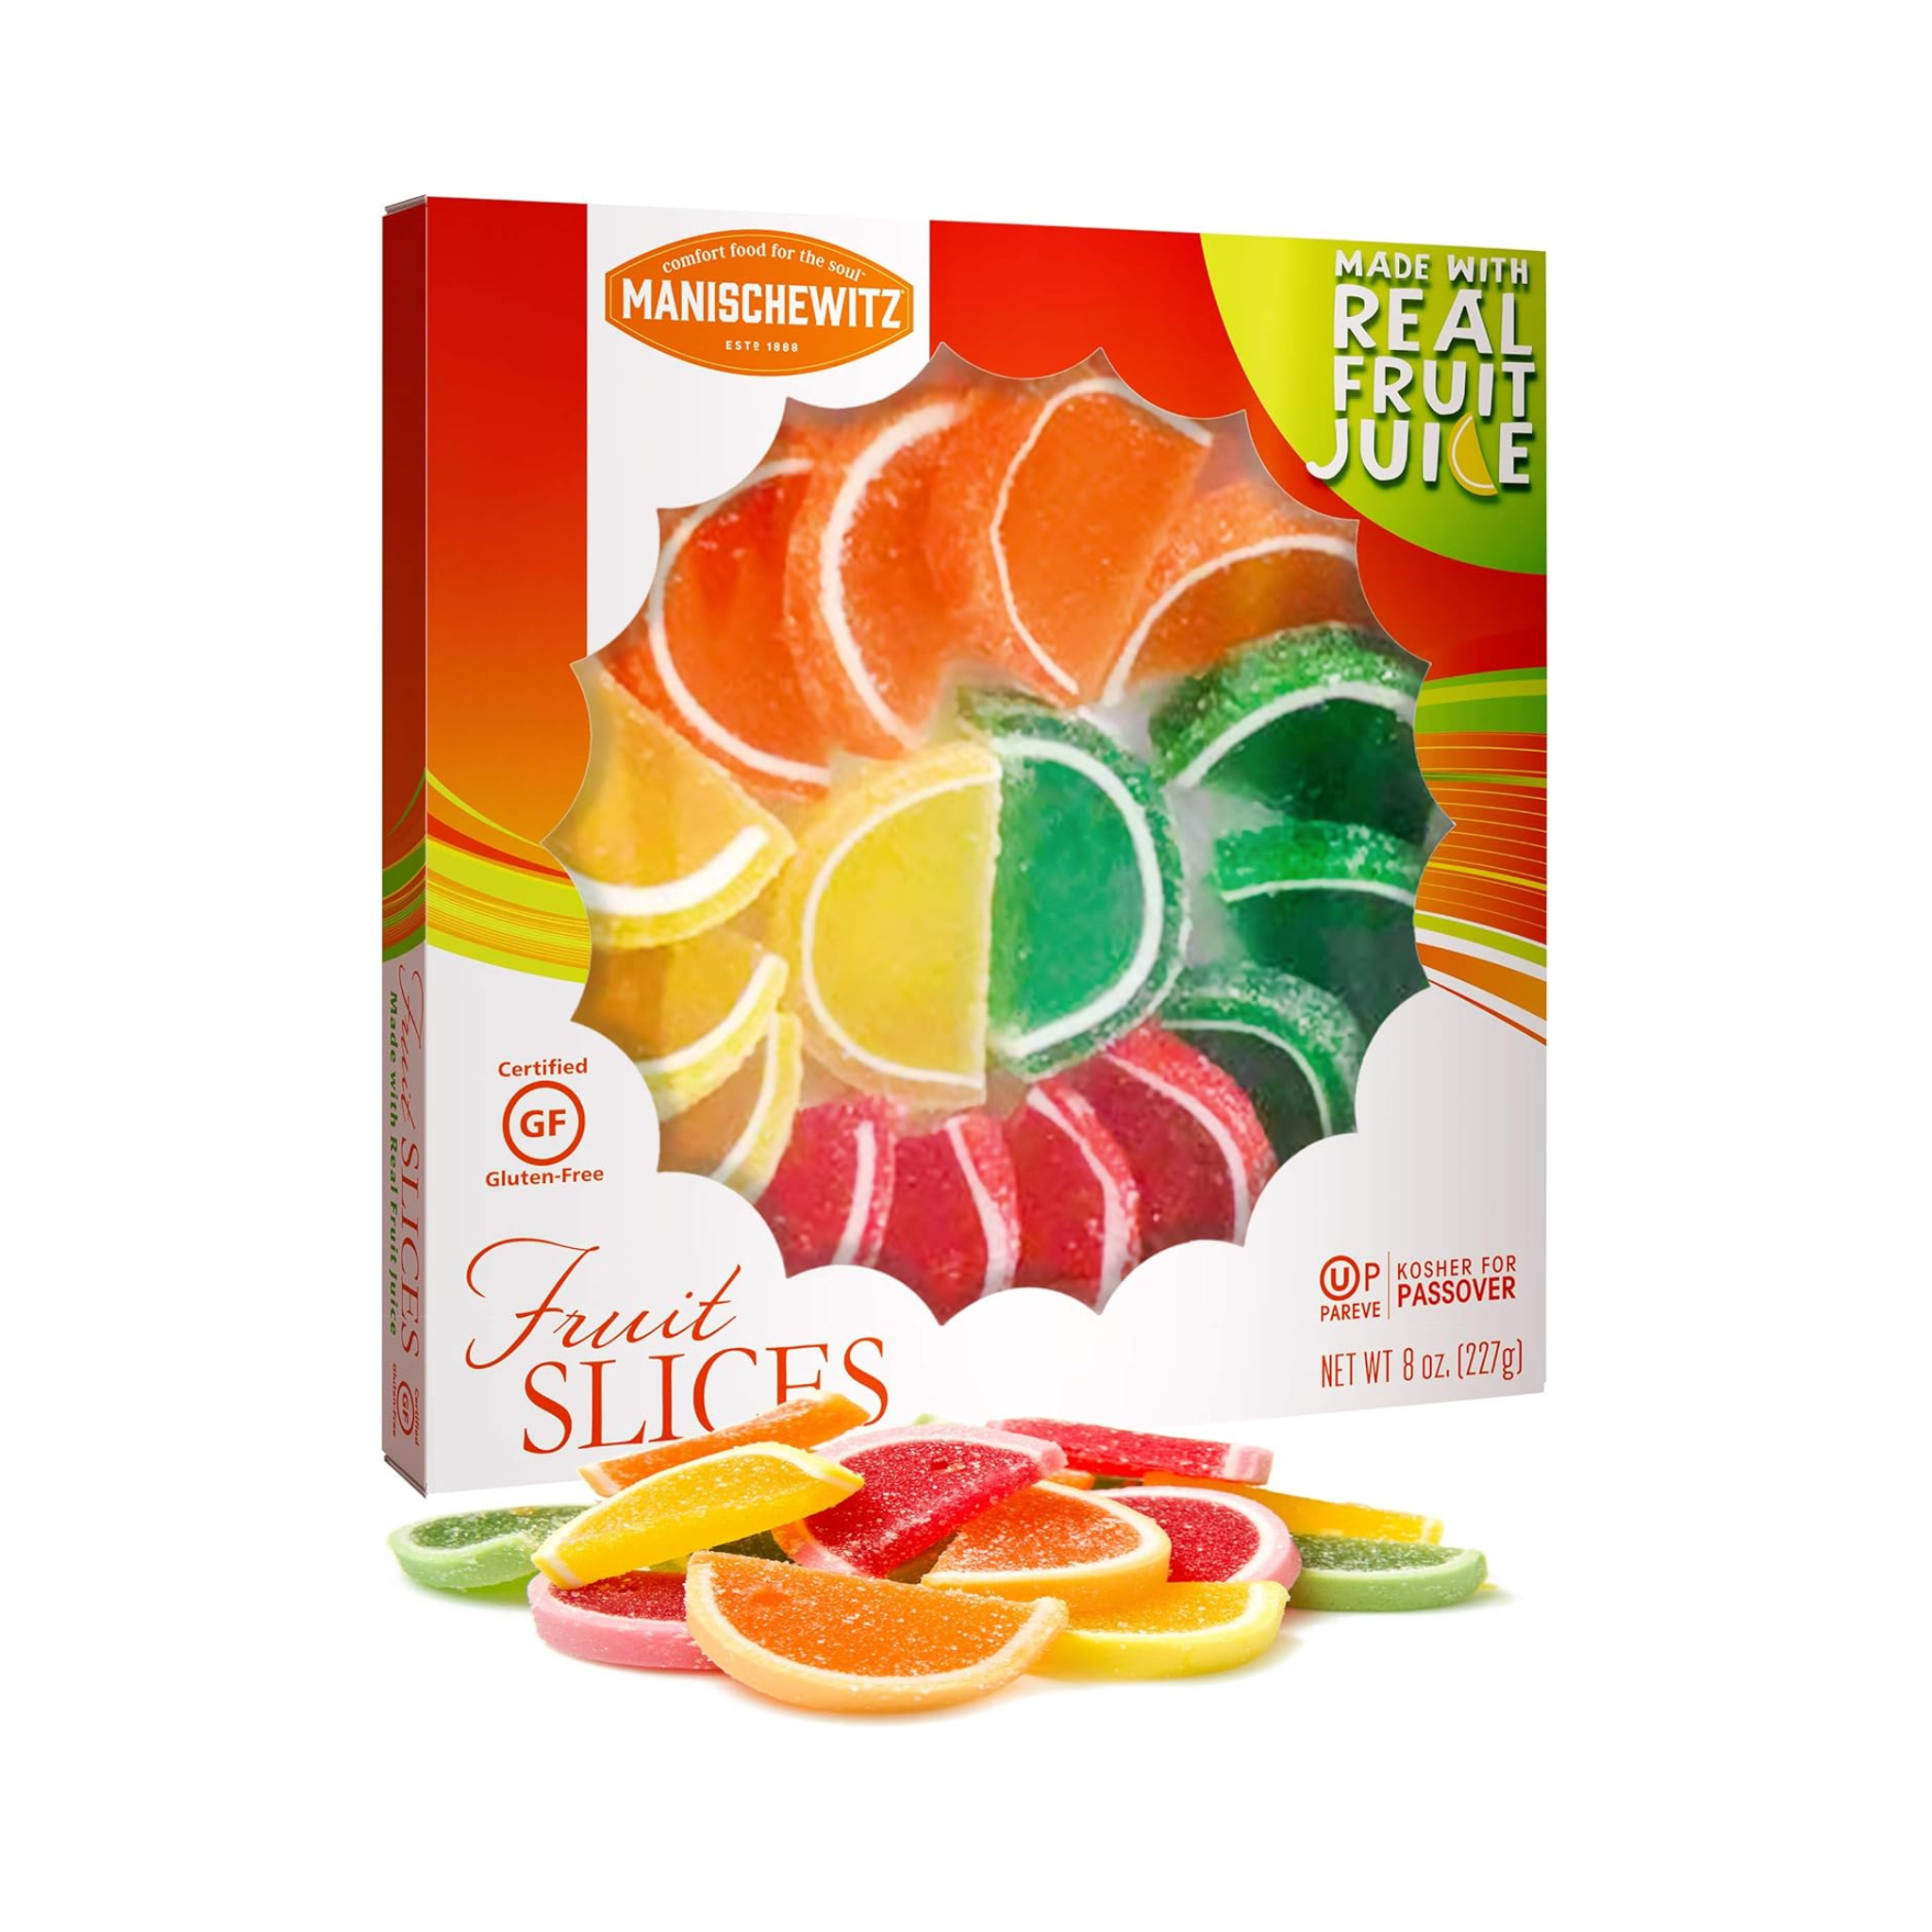 Manischewitz Fruit Slices in Gift Box, OU Passover